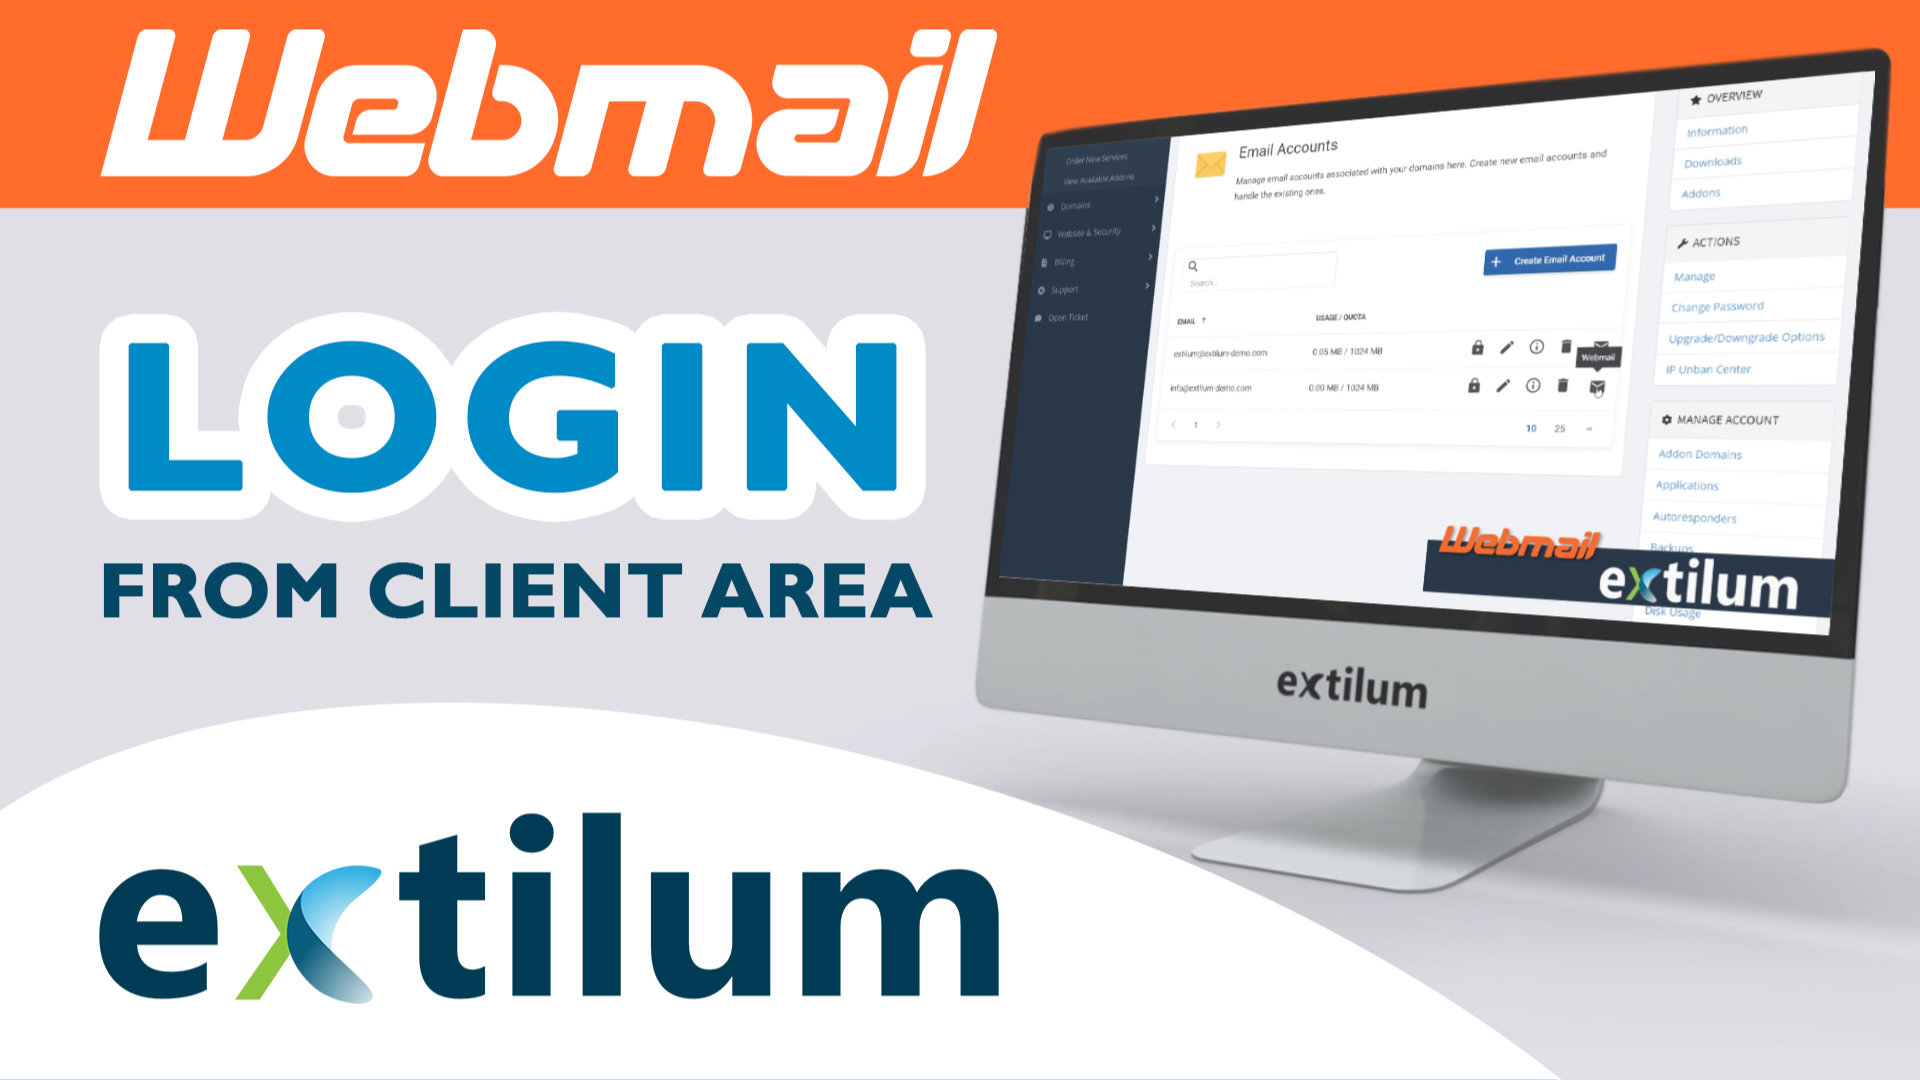 Extilum Webmail - Login from Client Area